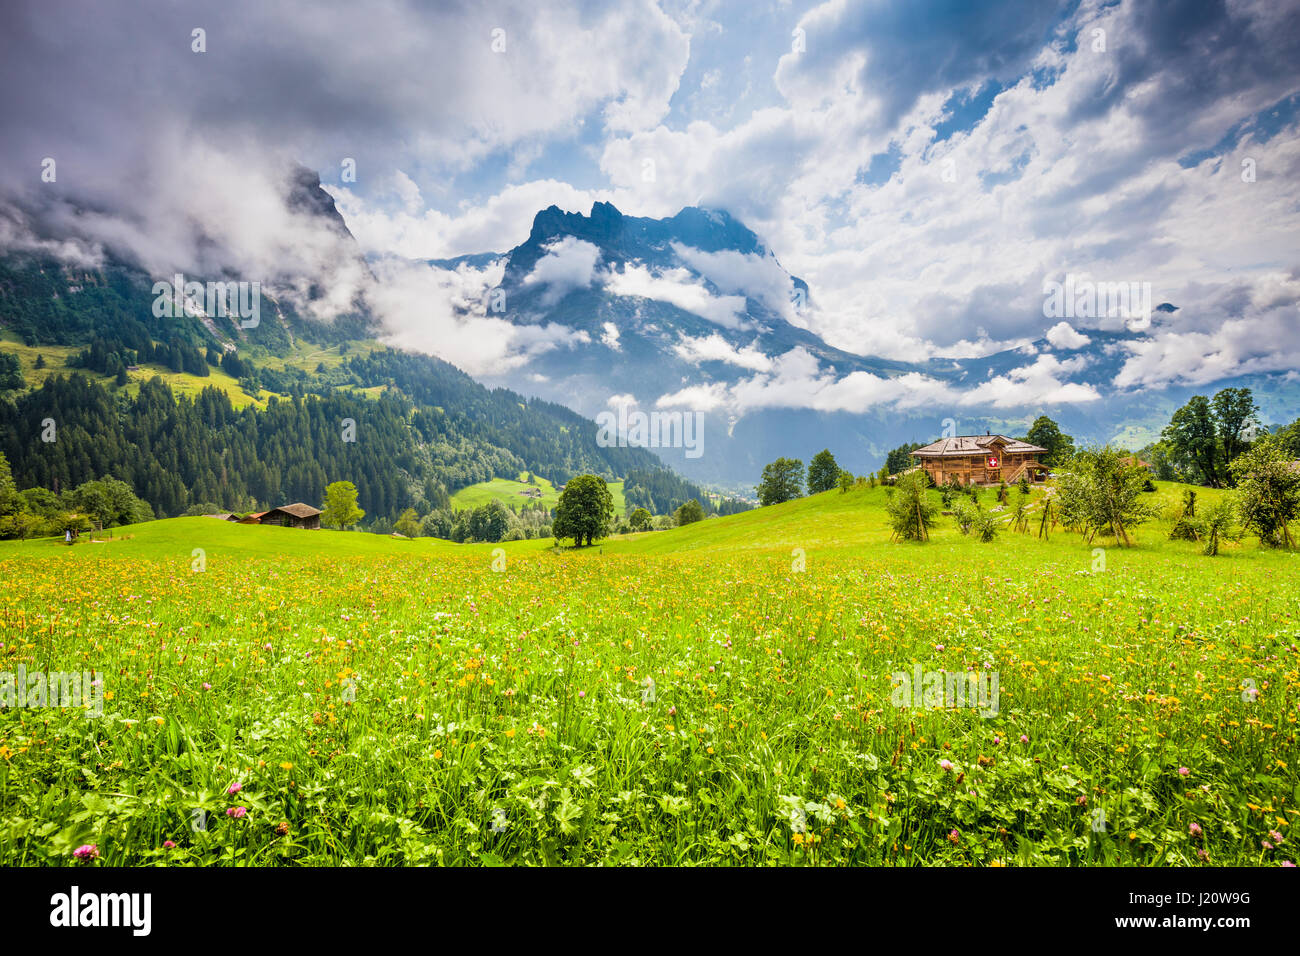 Idyllische Berglandschaft in den Alpen mit berühmten Eiger und Jungfrau Gipfeln und Chalet in frischen grünen Wiesen im Sommer, Grindelwald, Schweiz Stockfoto